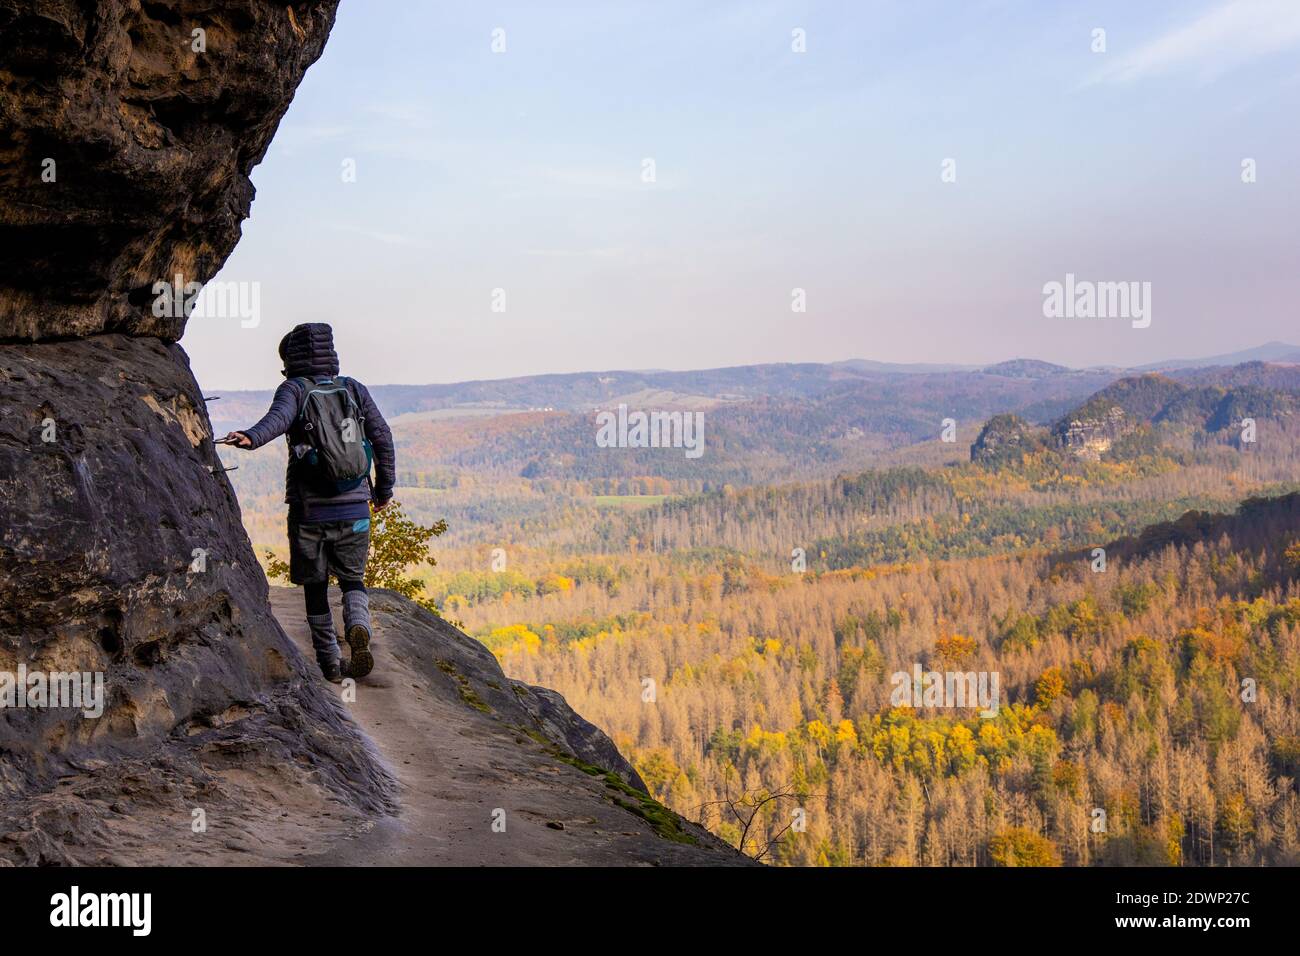 sentiero pedonale stretto - sentiero escursionistico per idagrotte nel parco nazionale della svizzera sassone, sächsische schweiz, elbsansteingebirge, germania orientale Foto Stock